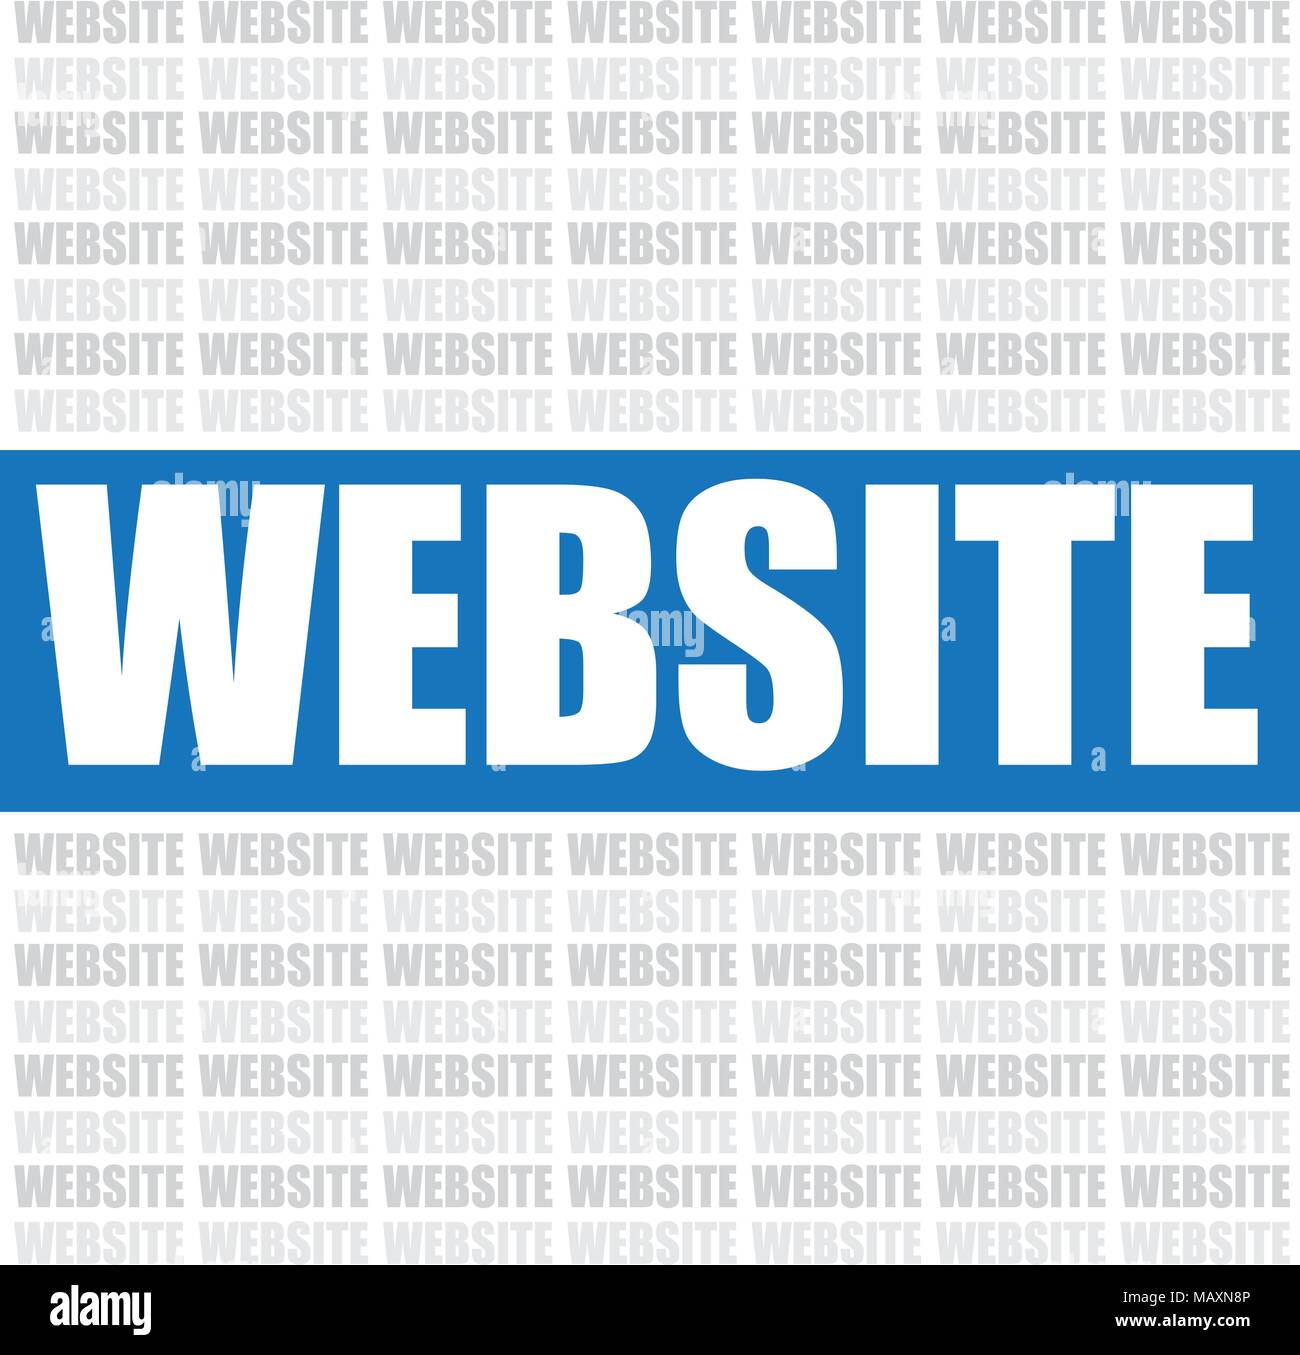 Site Web nuage de mots, vector background Illustration de Vecteur